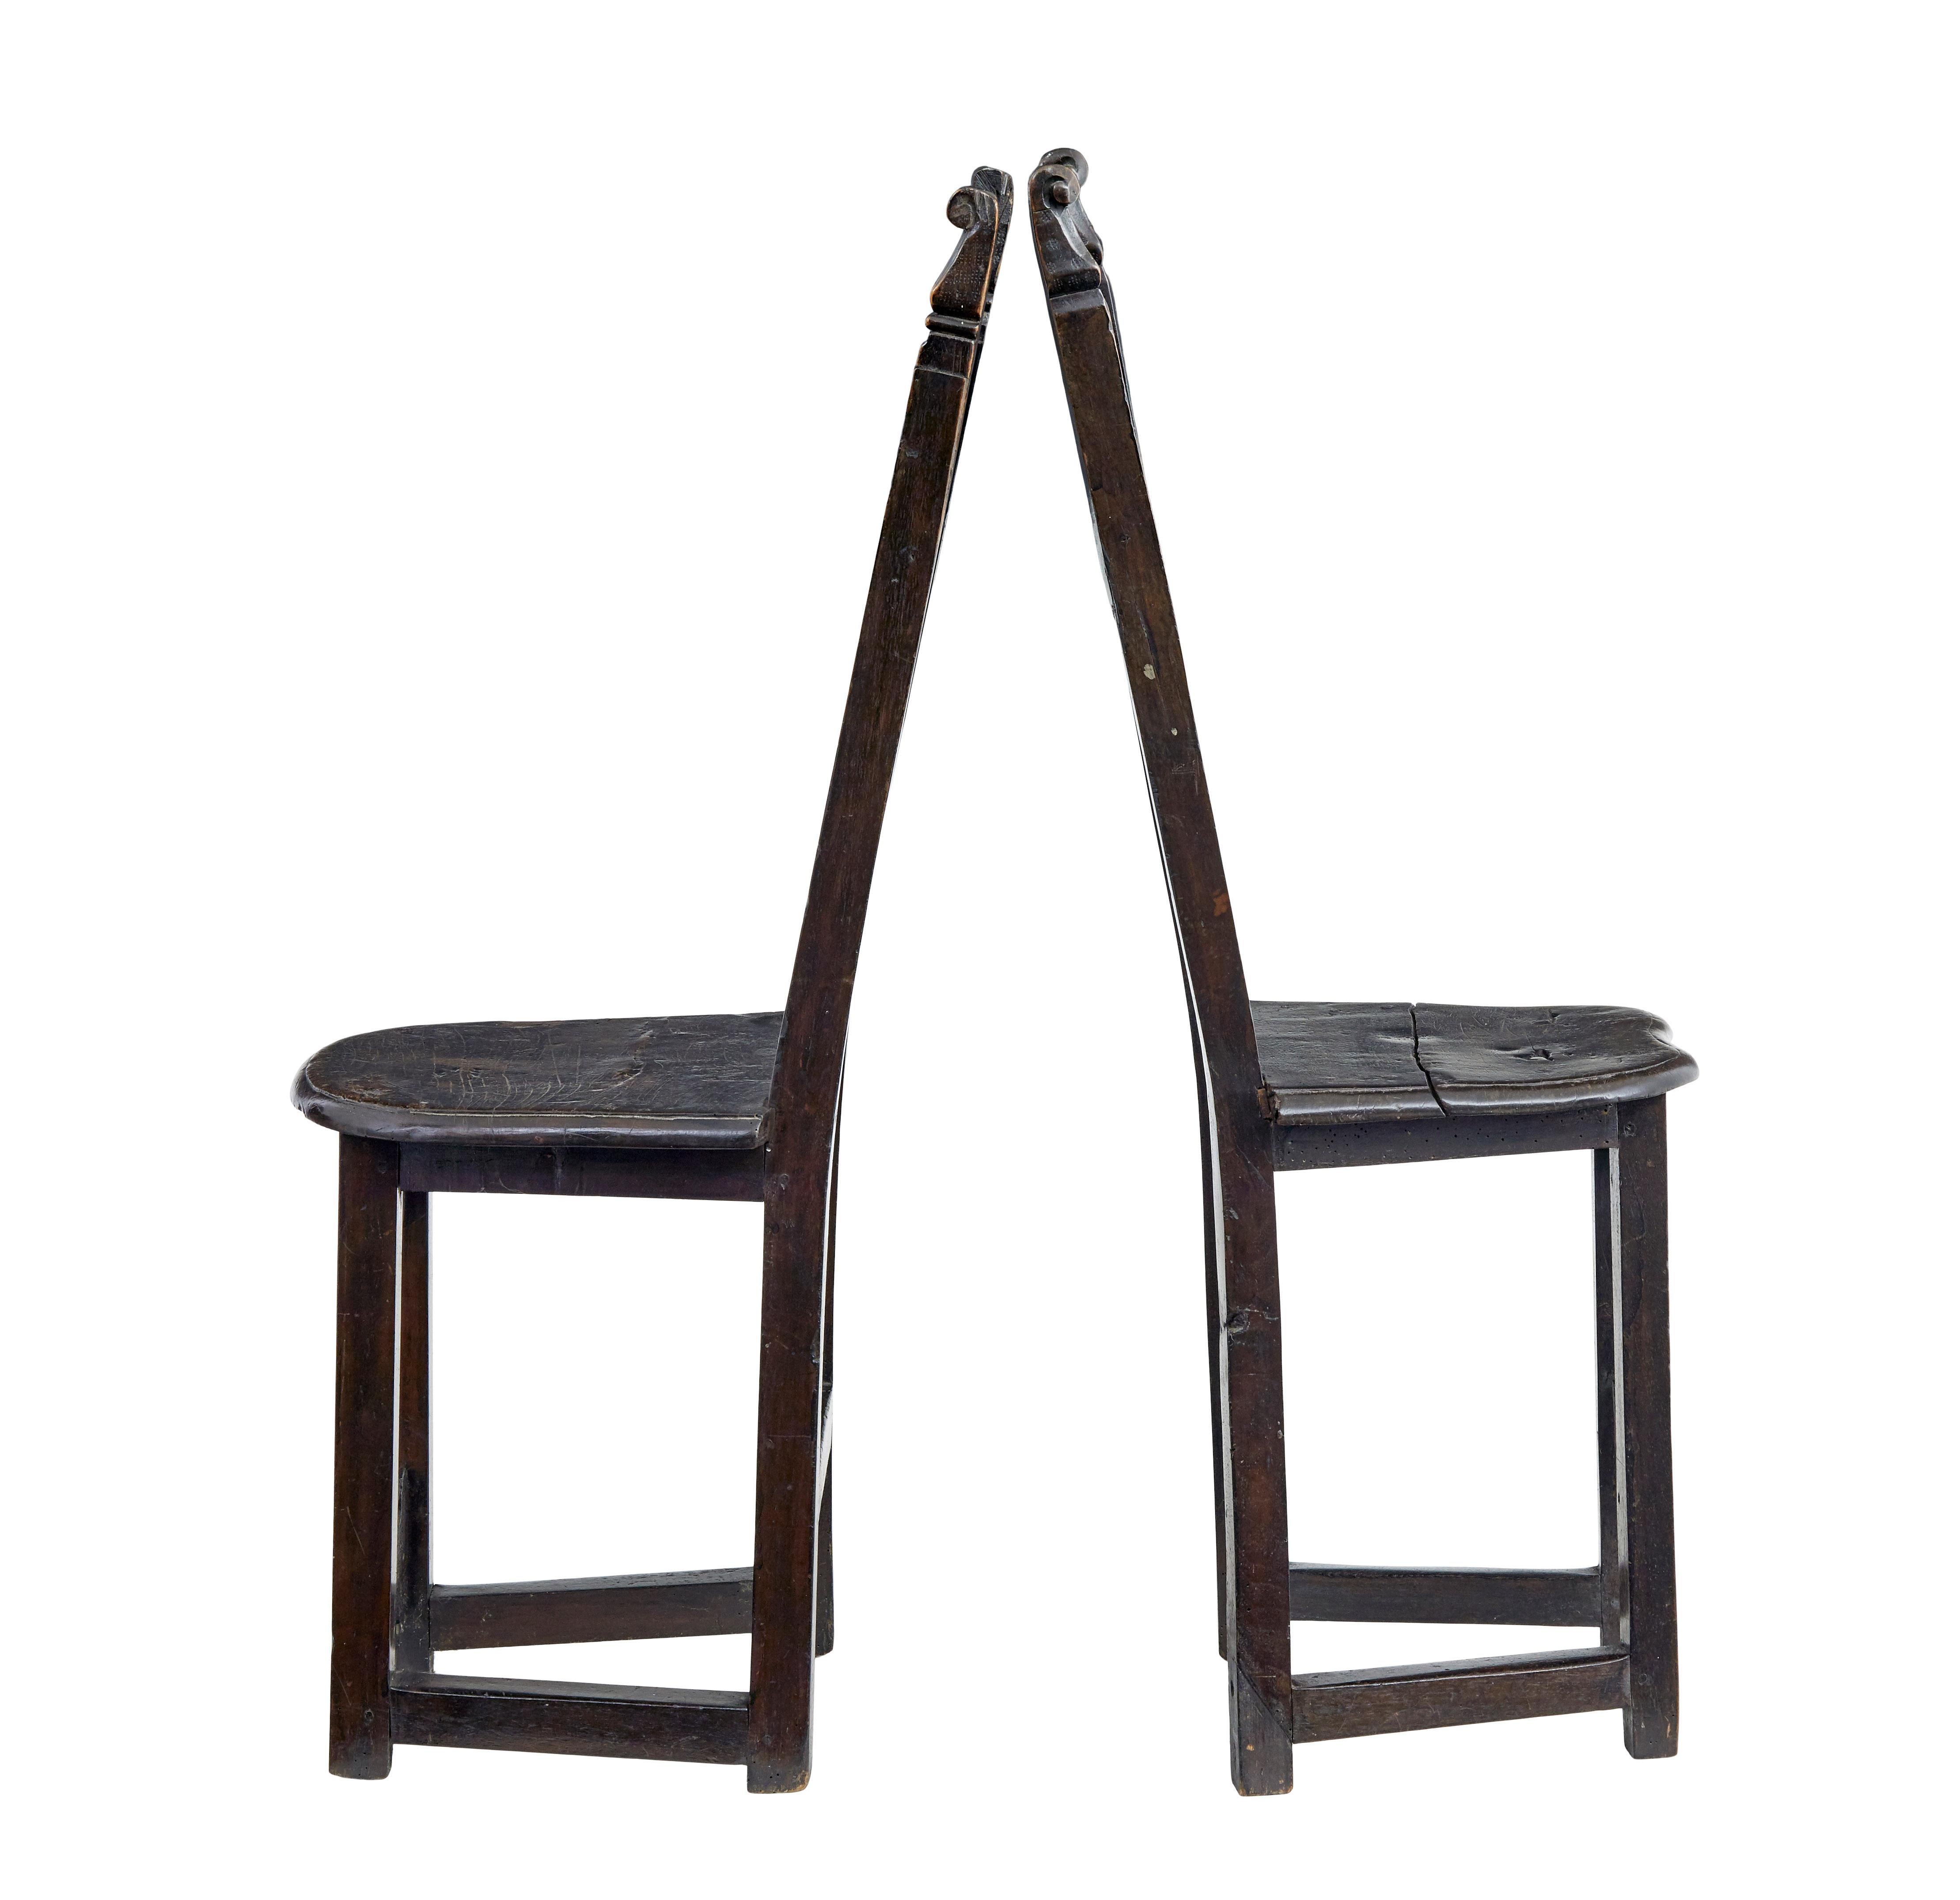 Paire inhabituelle de chaises d'entrée d'inspiration carolingienne vers 1880.

Fabriqué à partir d'éléments du XVIIIe siècle.  Les dossiers sont sculptés avec des plaques florales incrustées.
Légères différences dans les sculptures, voir les